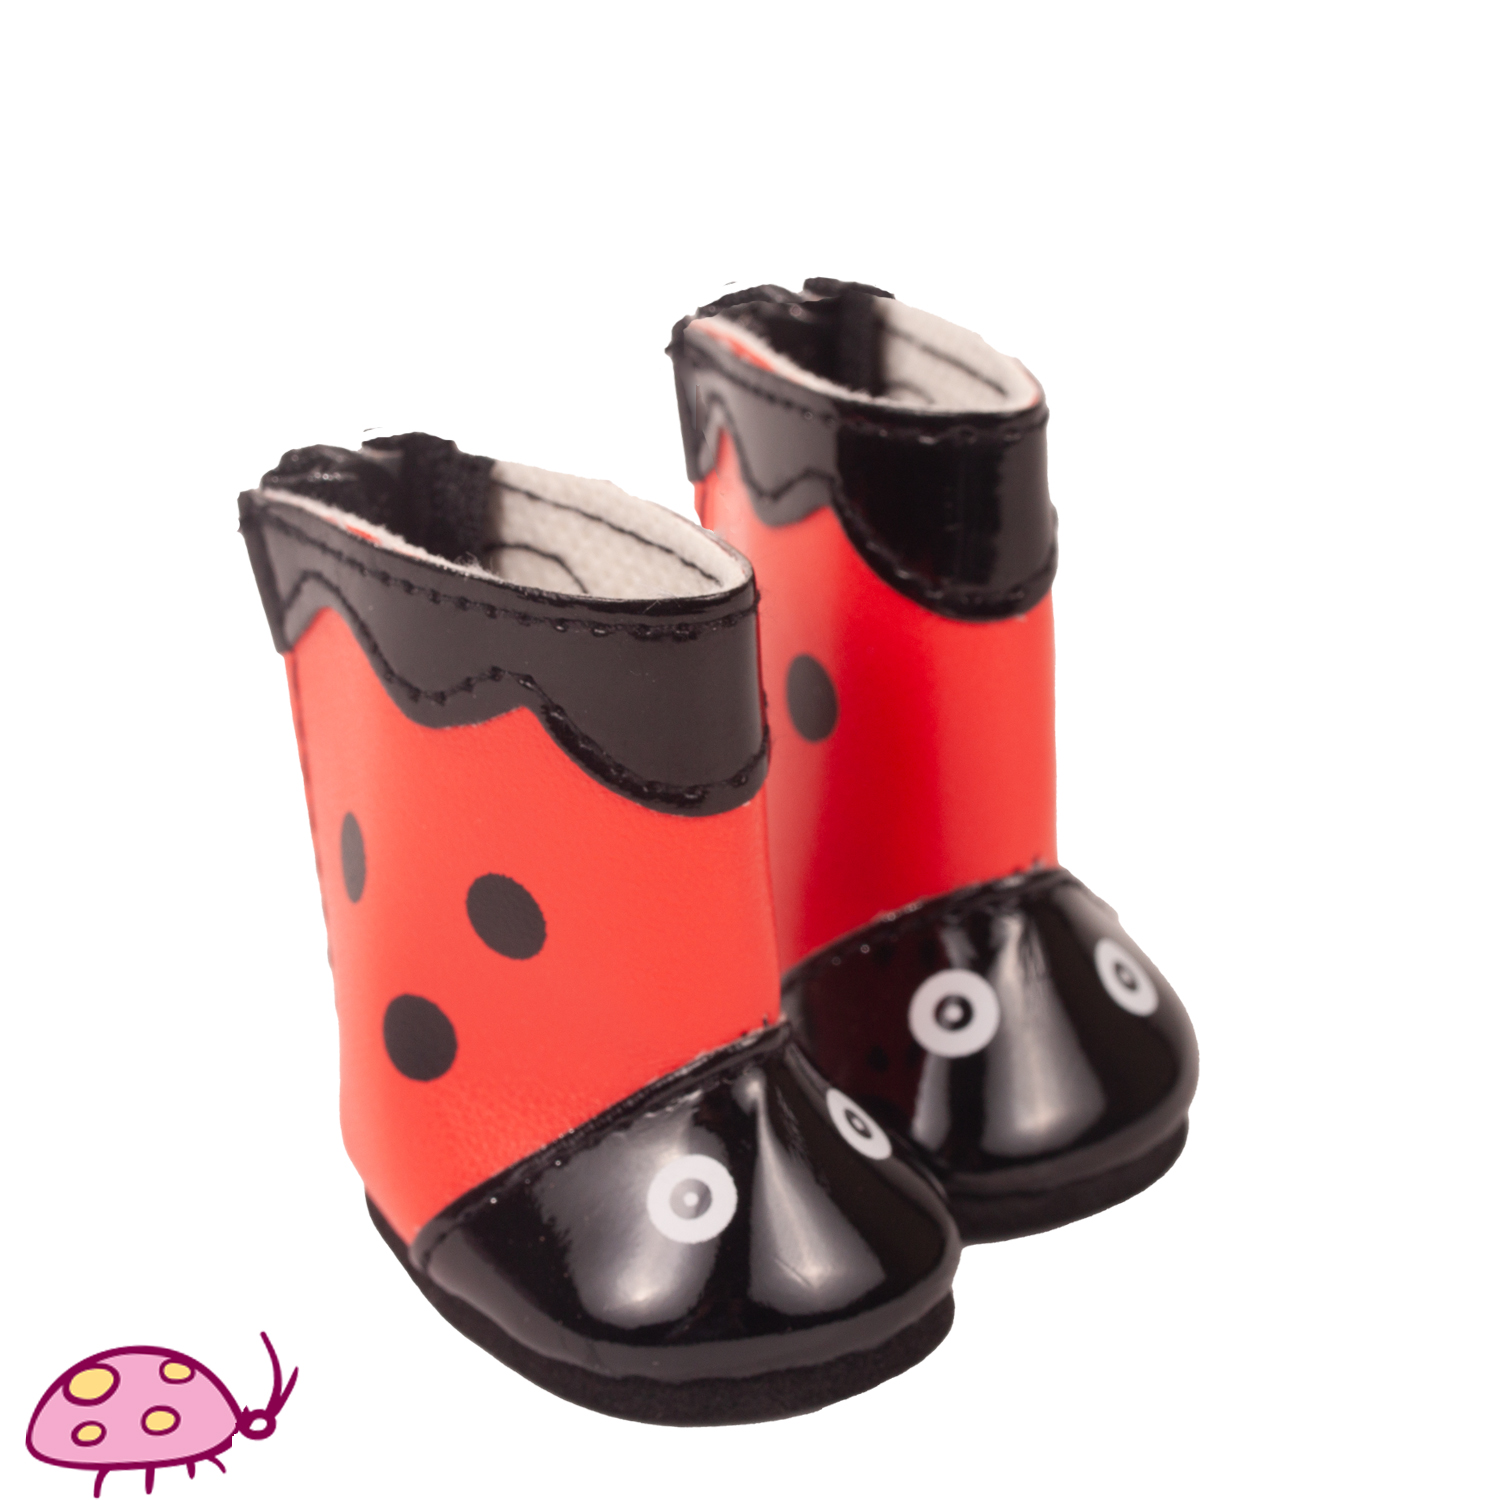 Boots Ladybug size XS